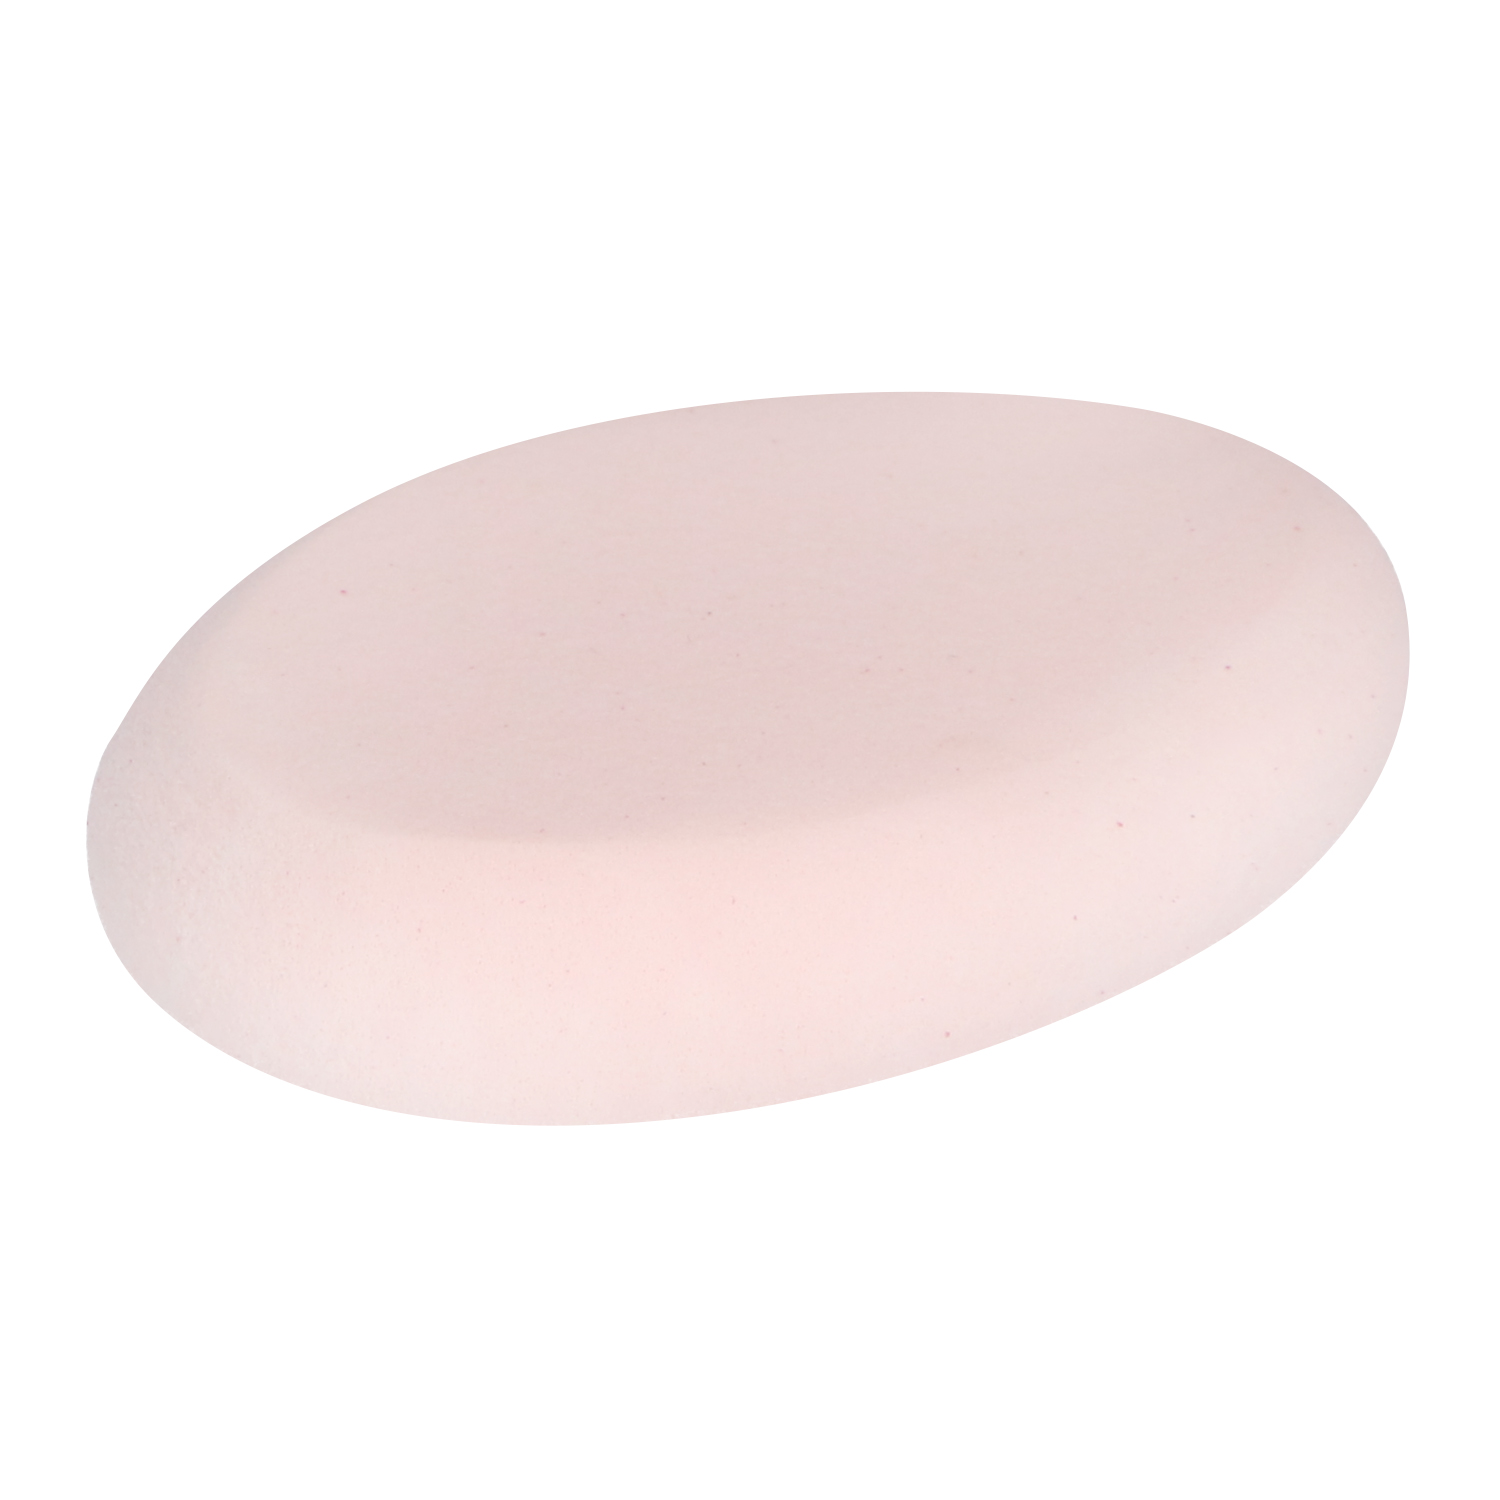 Oval Buffed Sponge Blending Spons - Light Pink